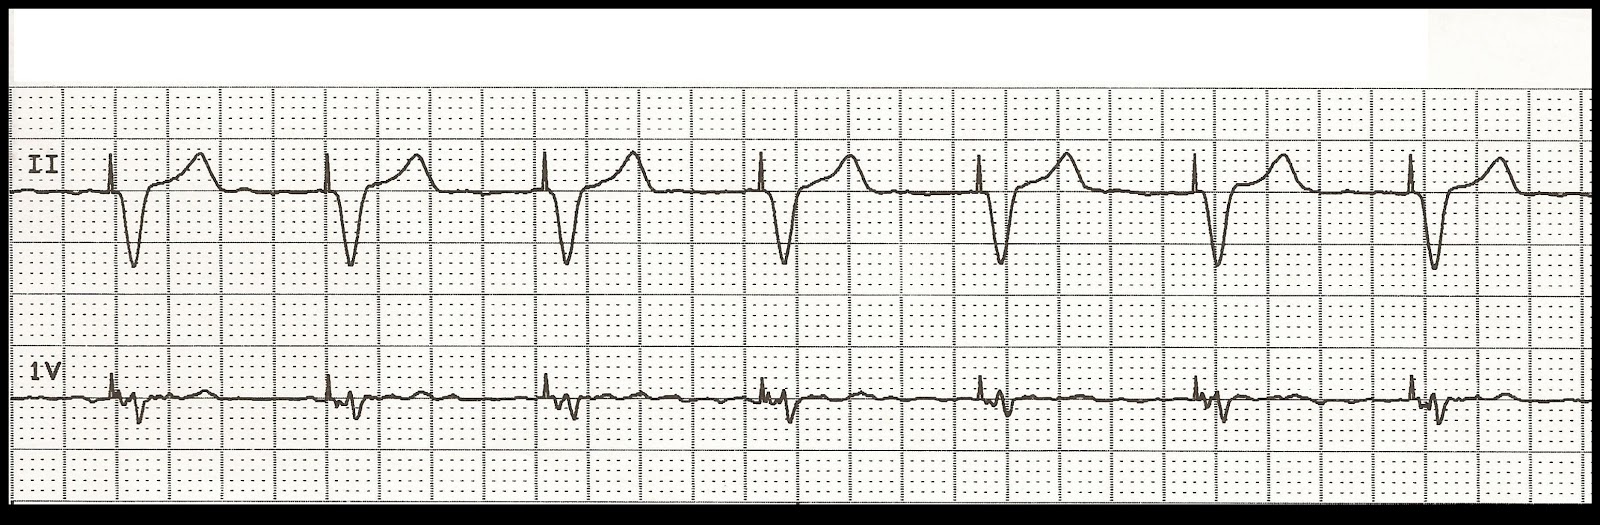 Float Nurse EKG Rhythm Strip Quiz 100 Paced rhythms